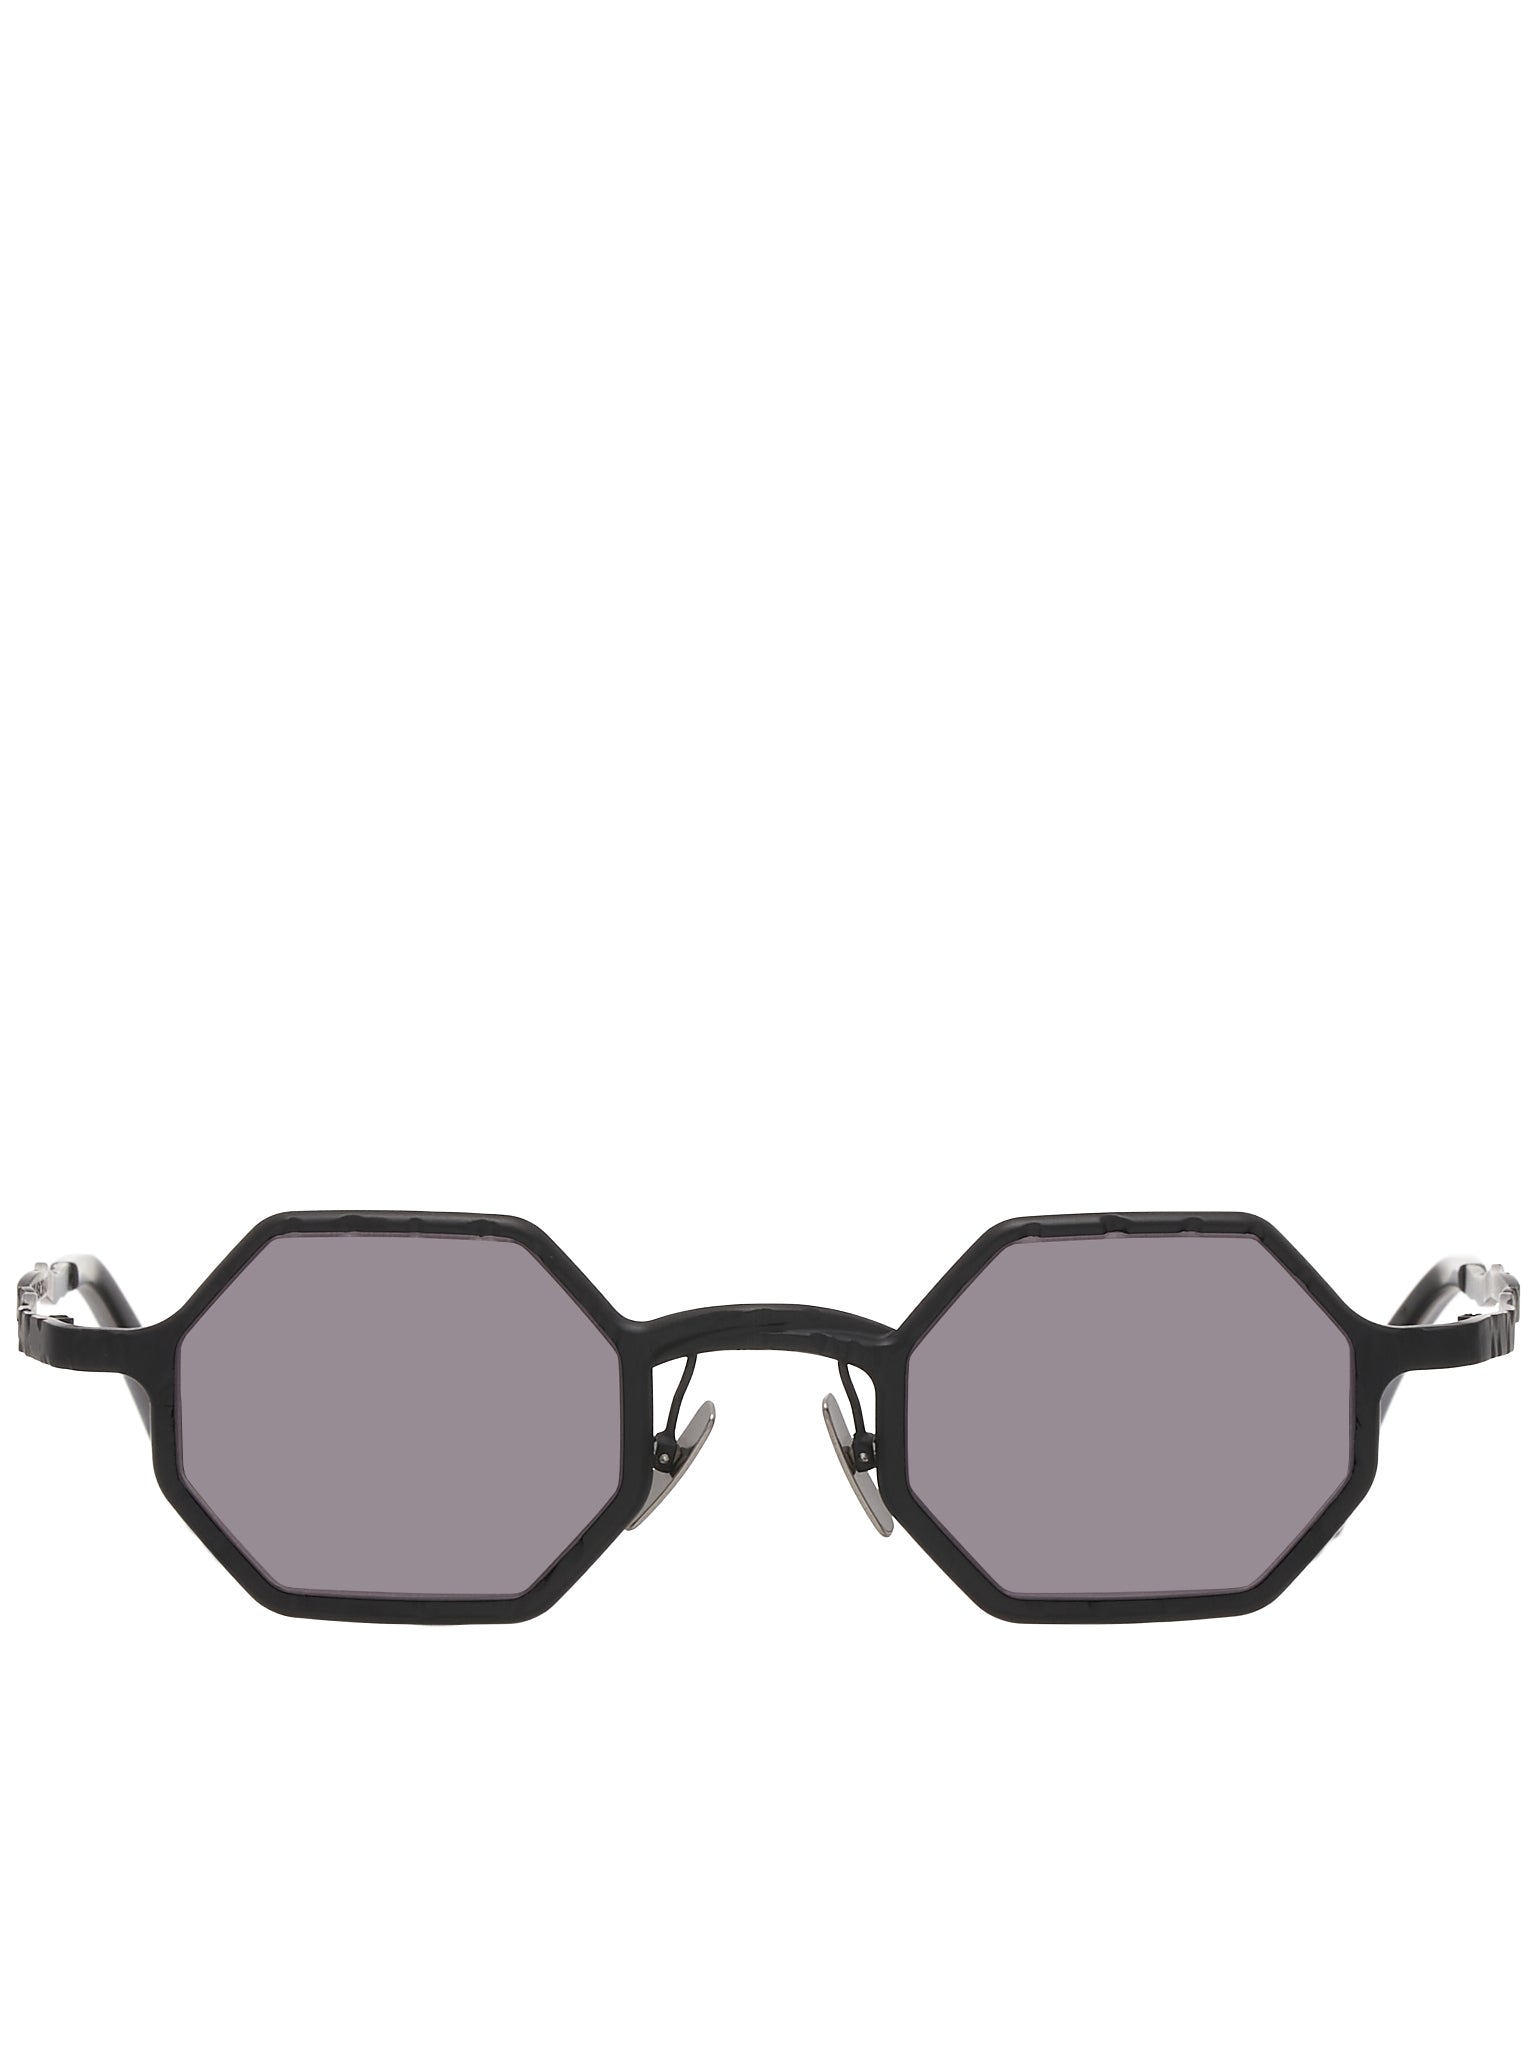 Z19 Sunglasses (Z19-43-25-BM-2GREY)